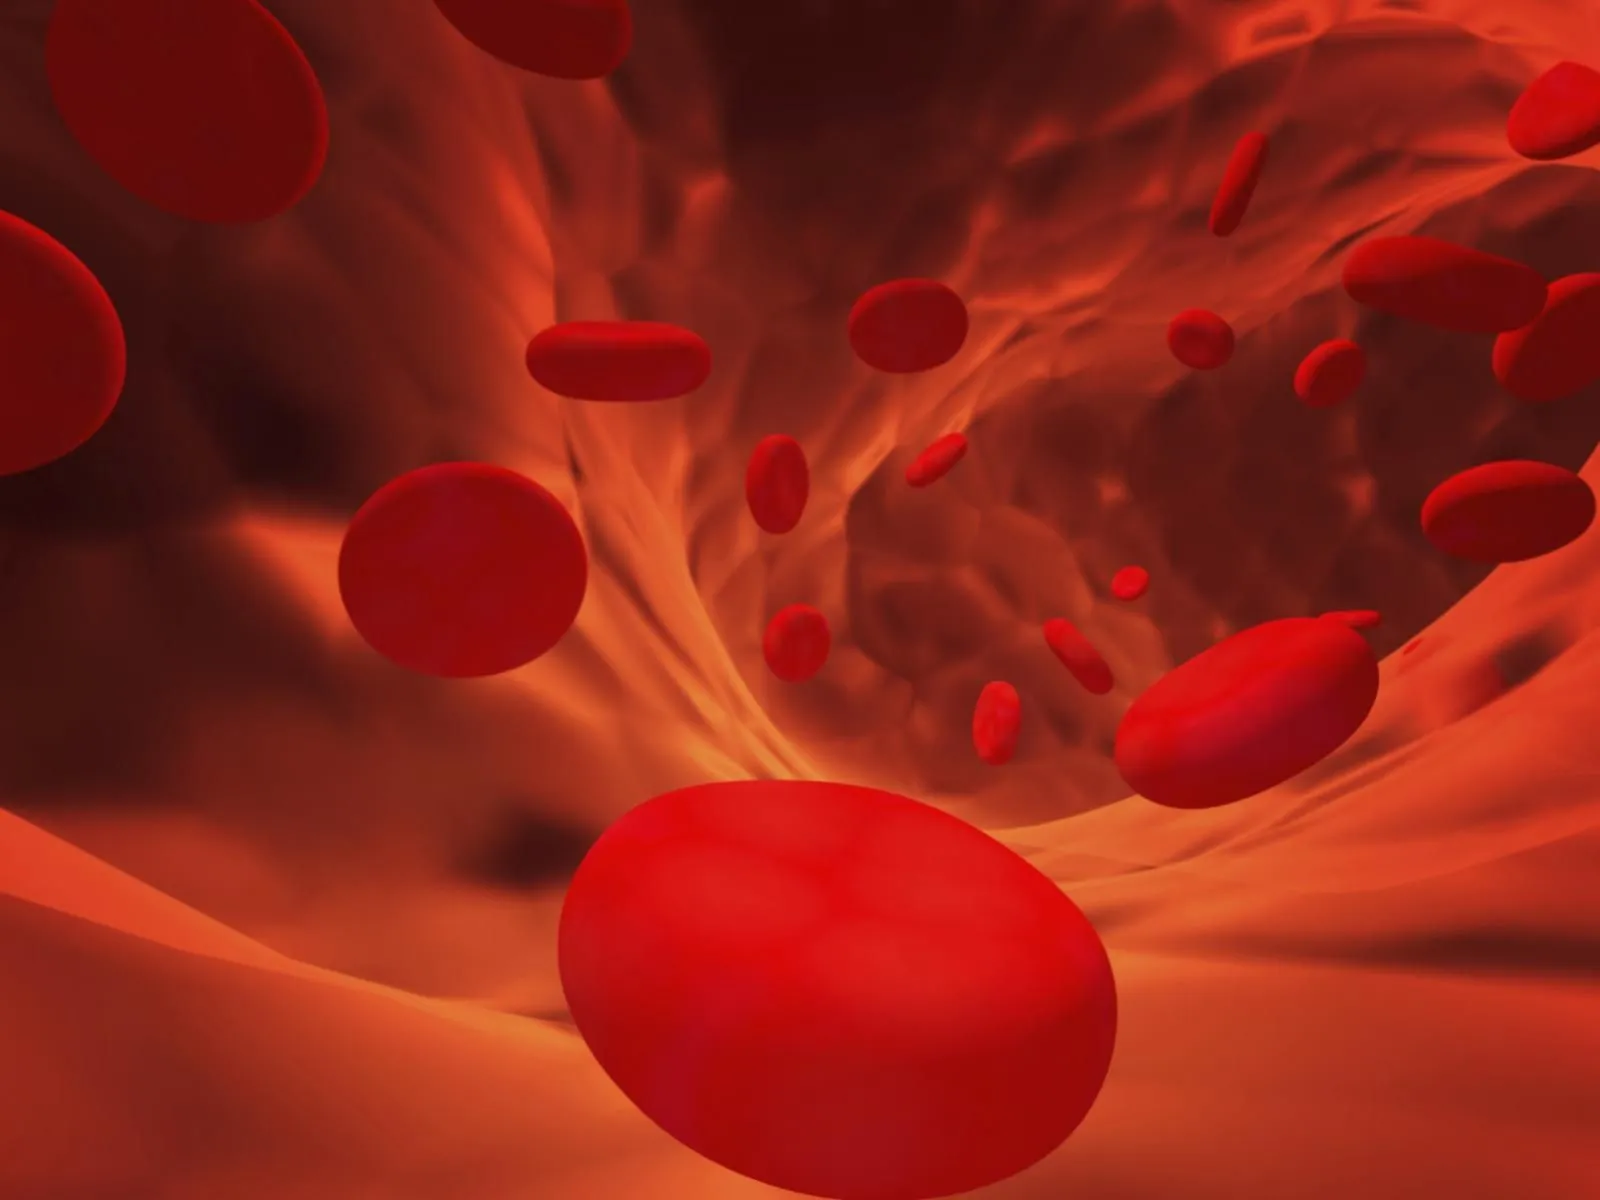 Sangre producida en laboratorio a gran escala | Salud180